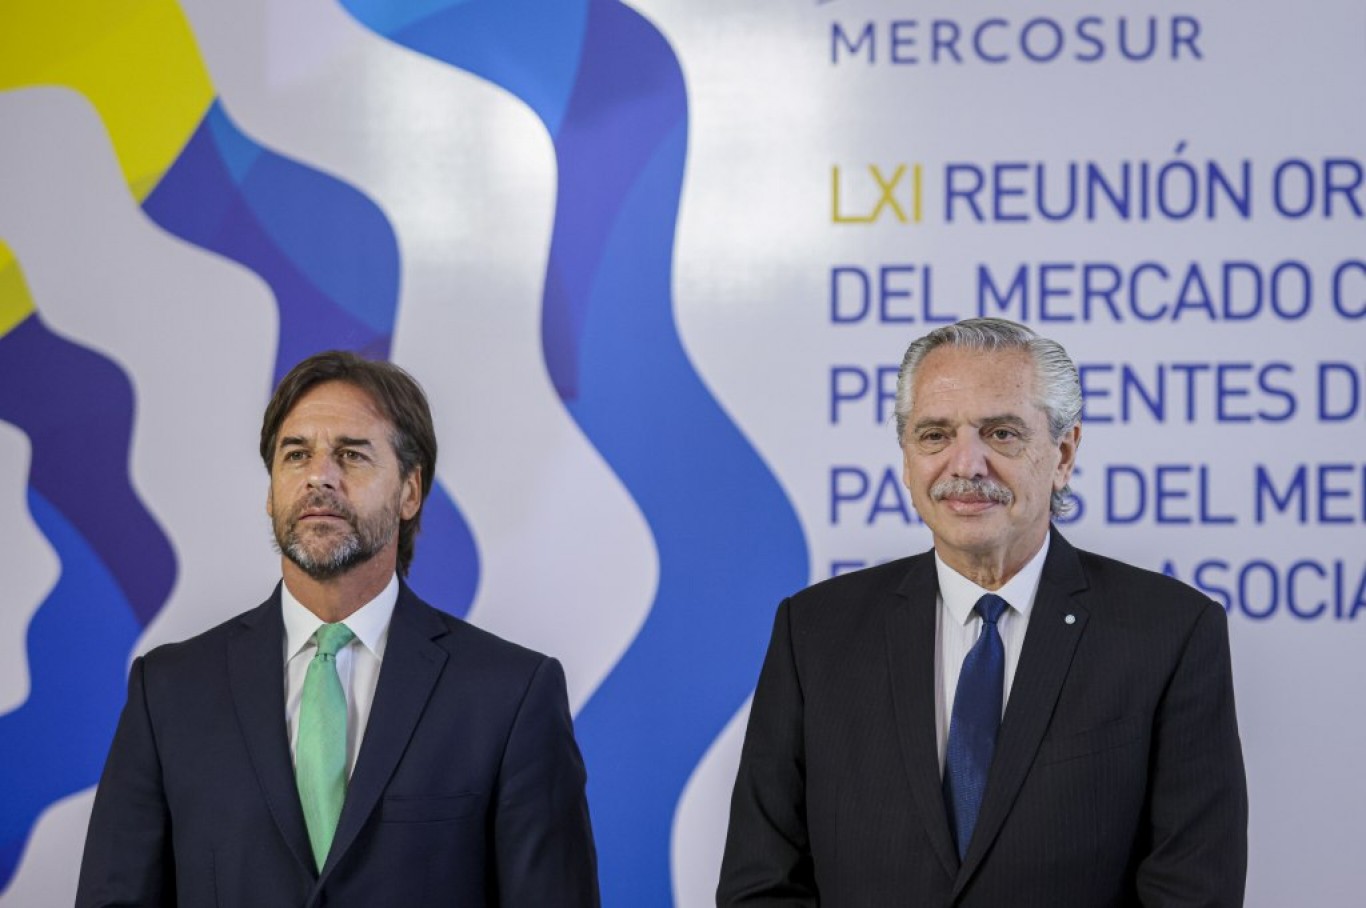 Mercosur: Alberto Fernández acusó a Lacalle Pou de querer "romper" el bloque